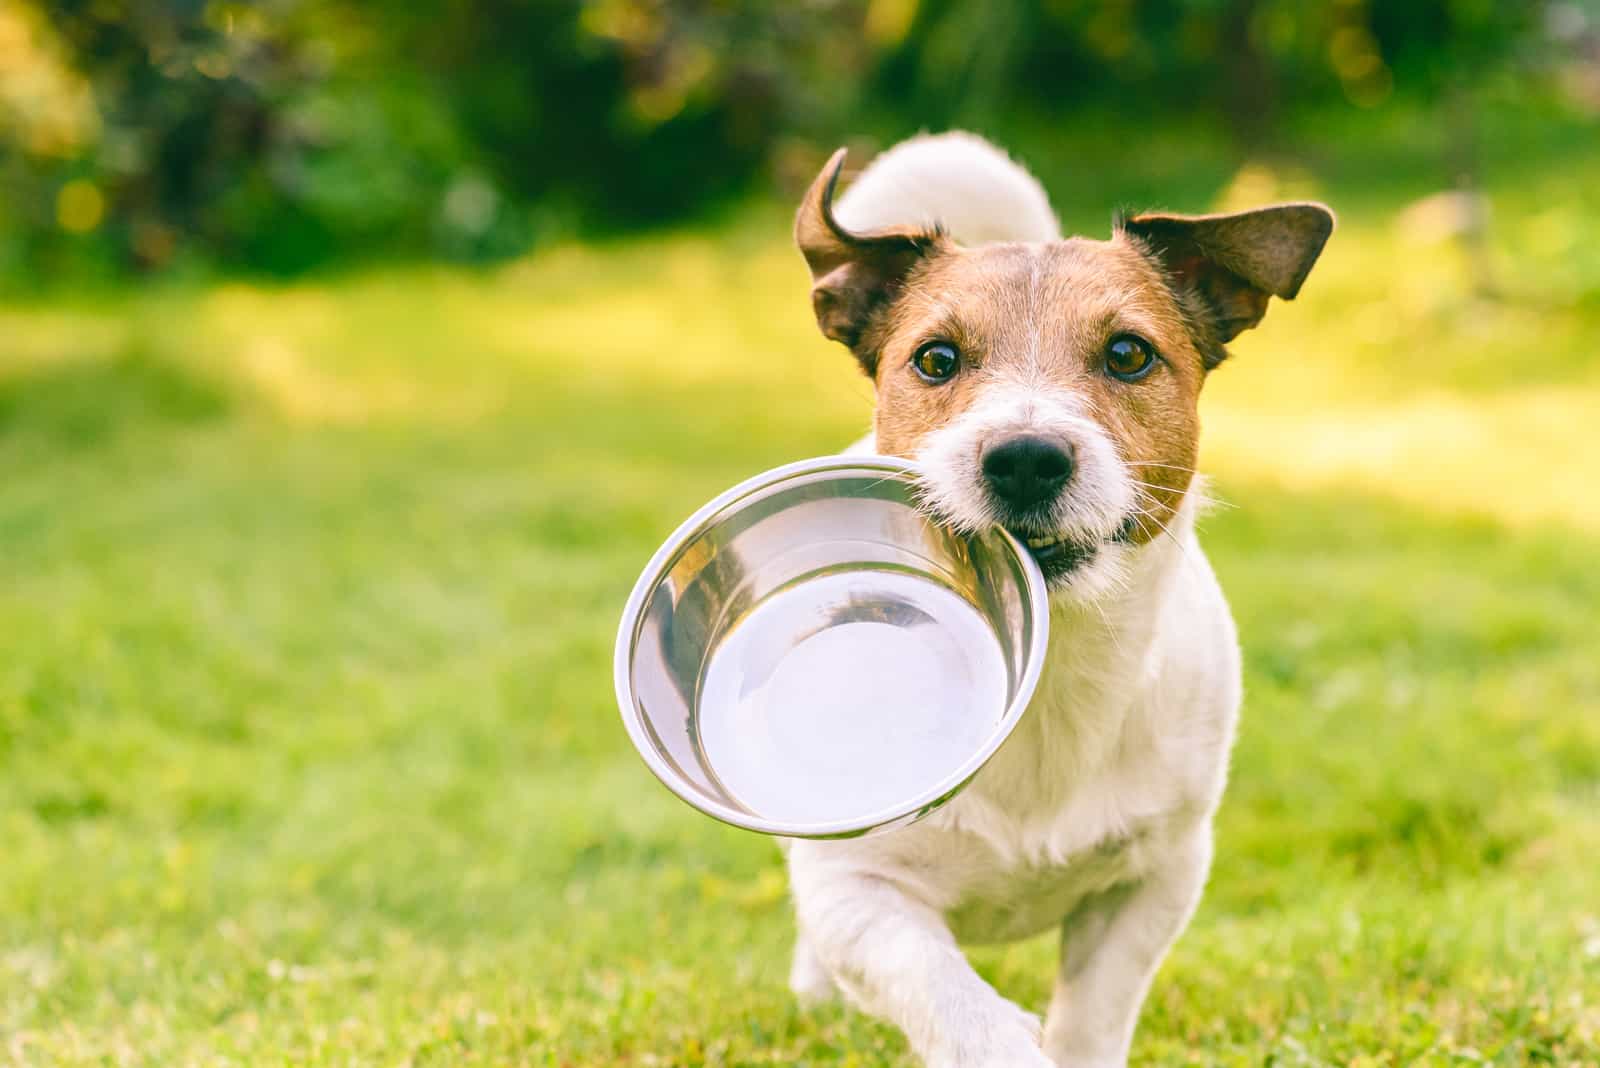 Hungriger oder durstiger Hund holt eine Metallschale, um Futter oder Wasser zu bekommen